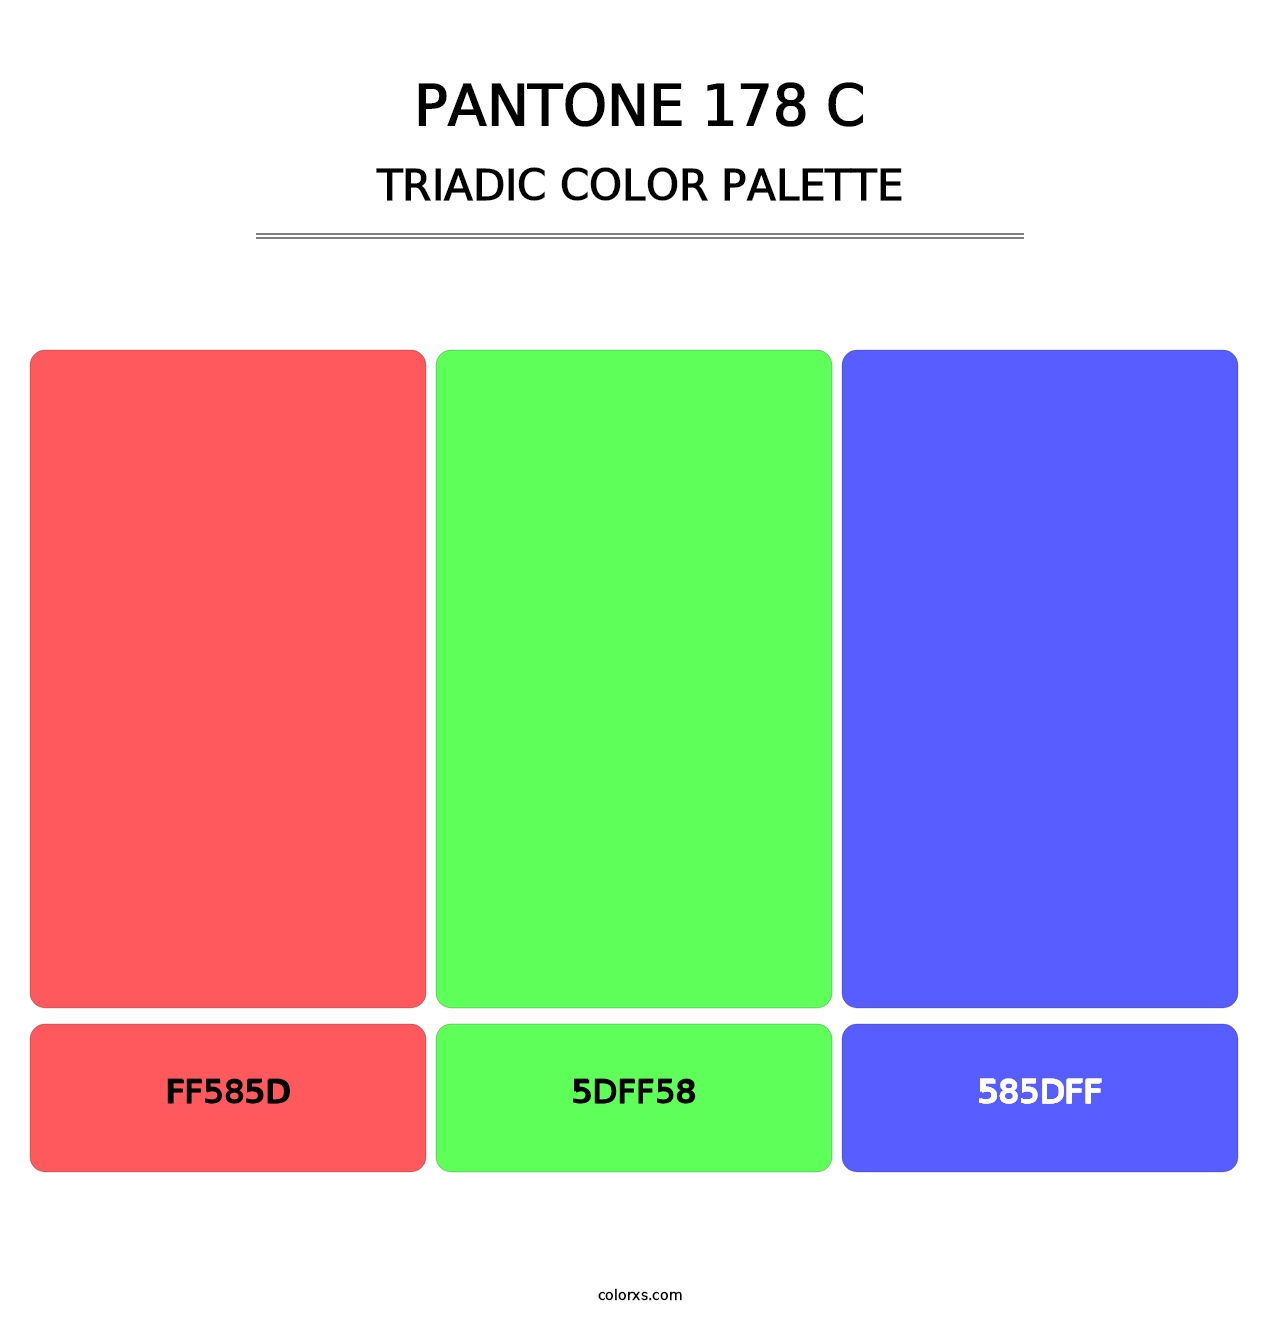 PANTONE 178 C - Triadic Color Palette